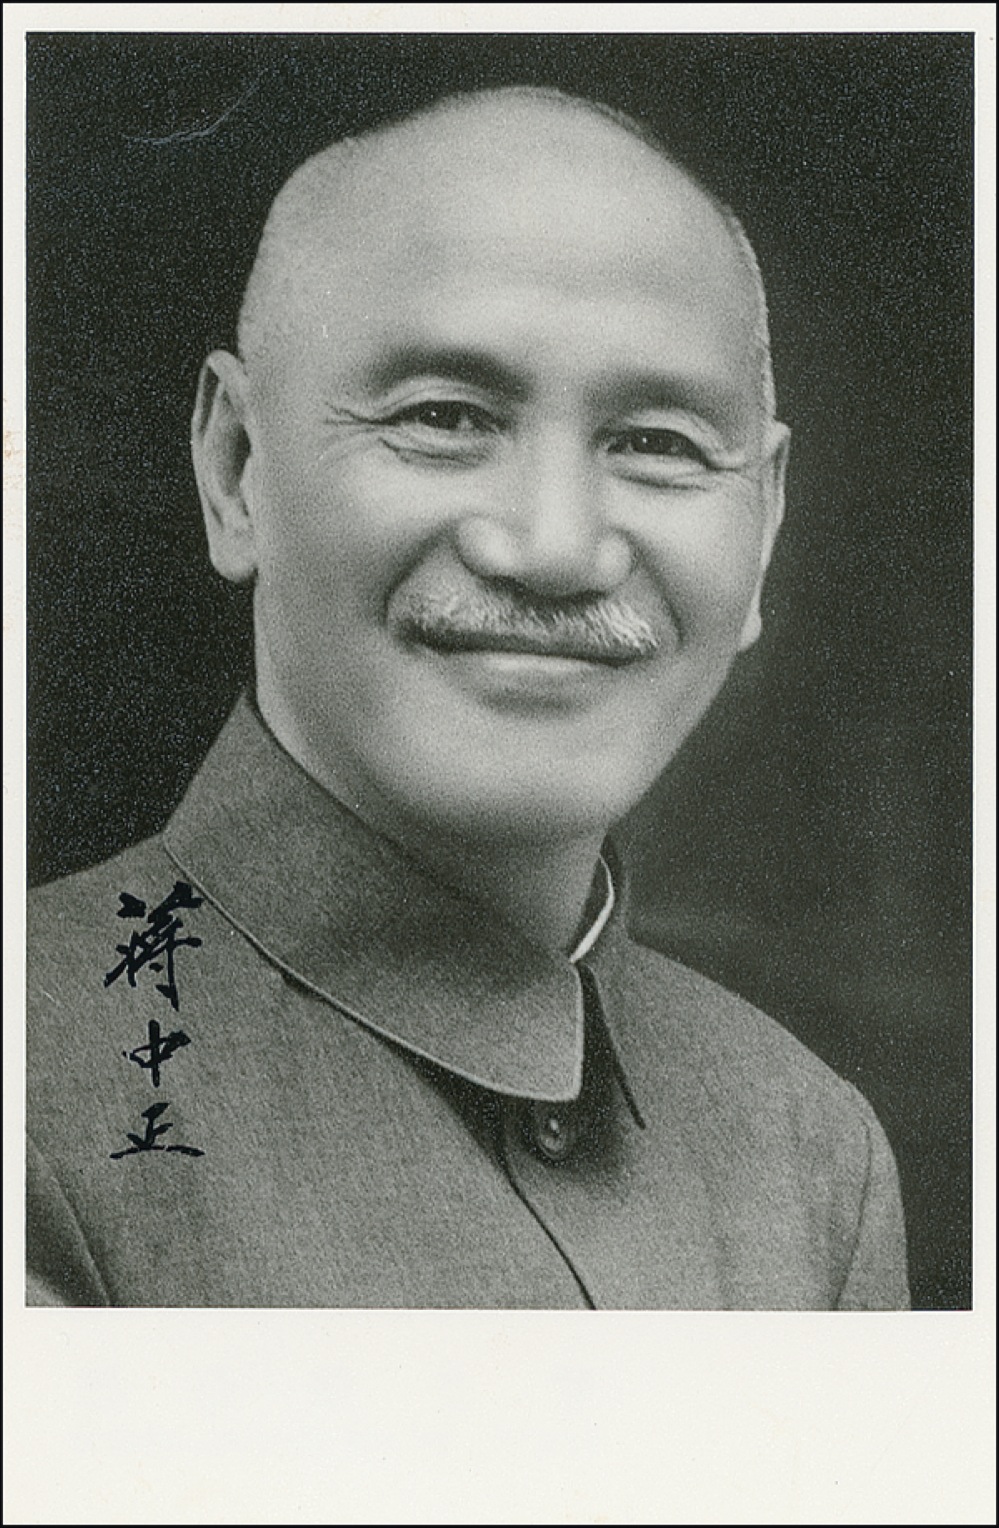 Lot #188 Chiang Kai-Shek